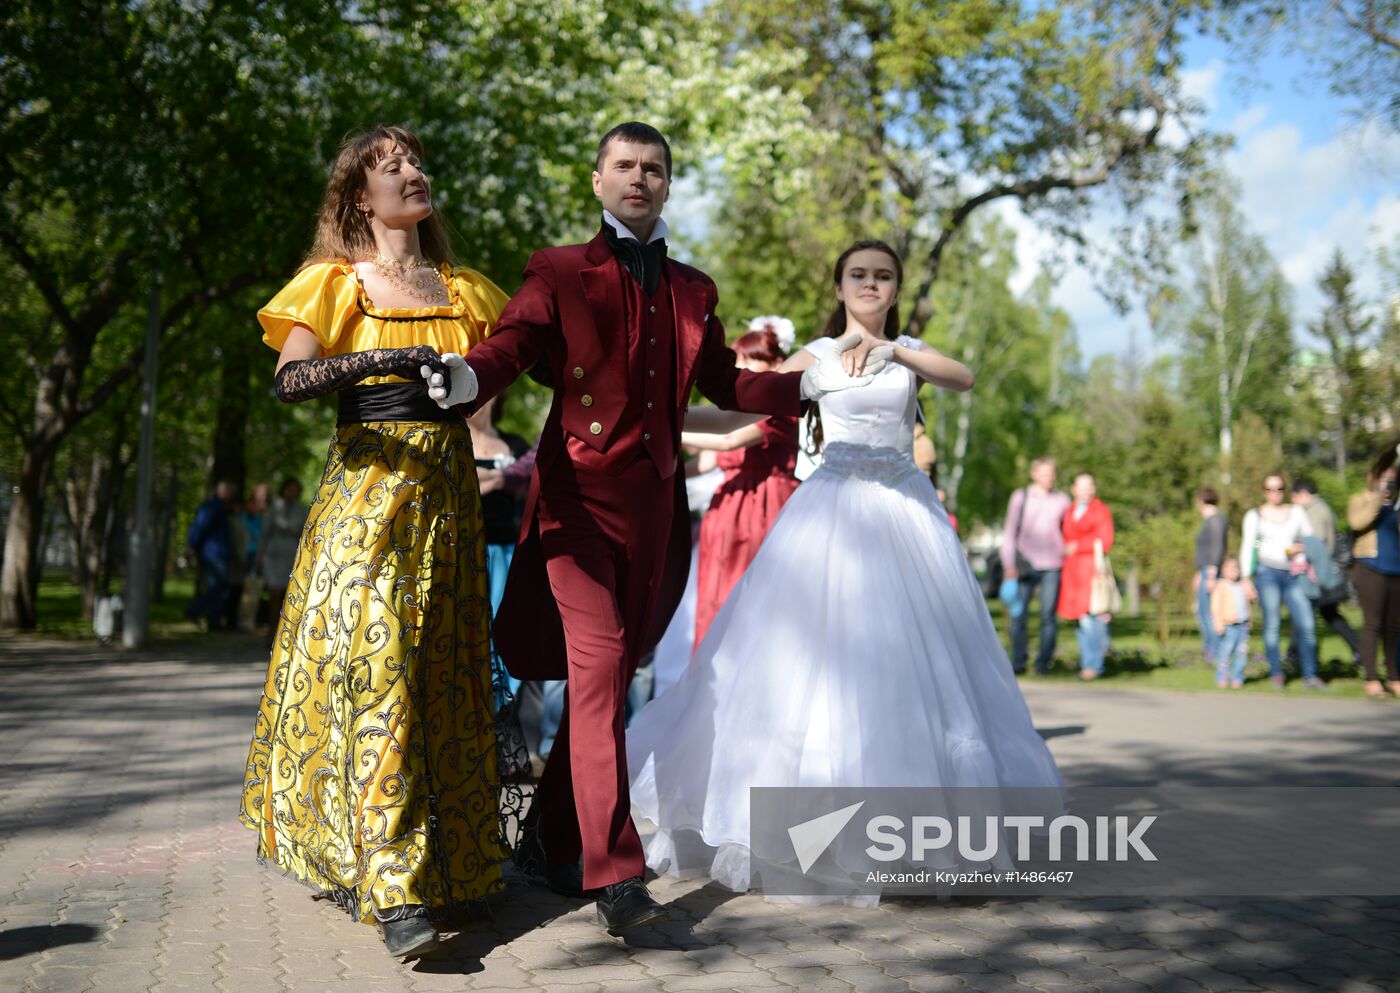 Costume ball to celebrate Alexander Pushkin's birthday